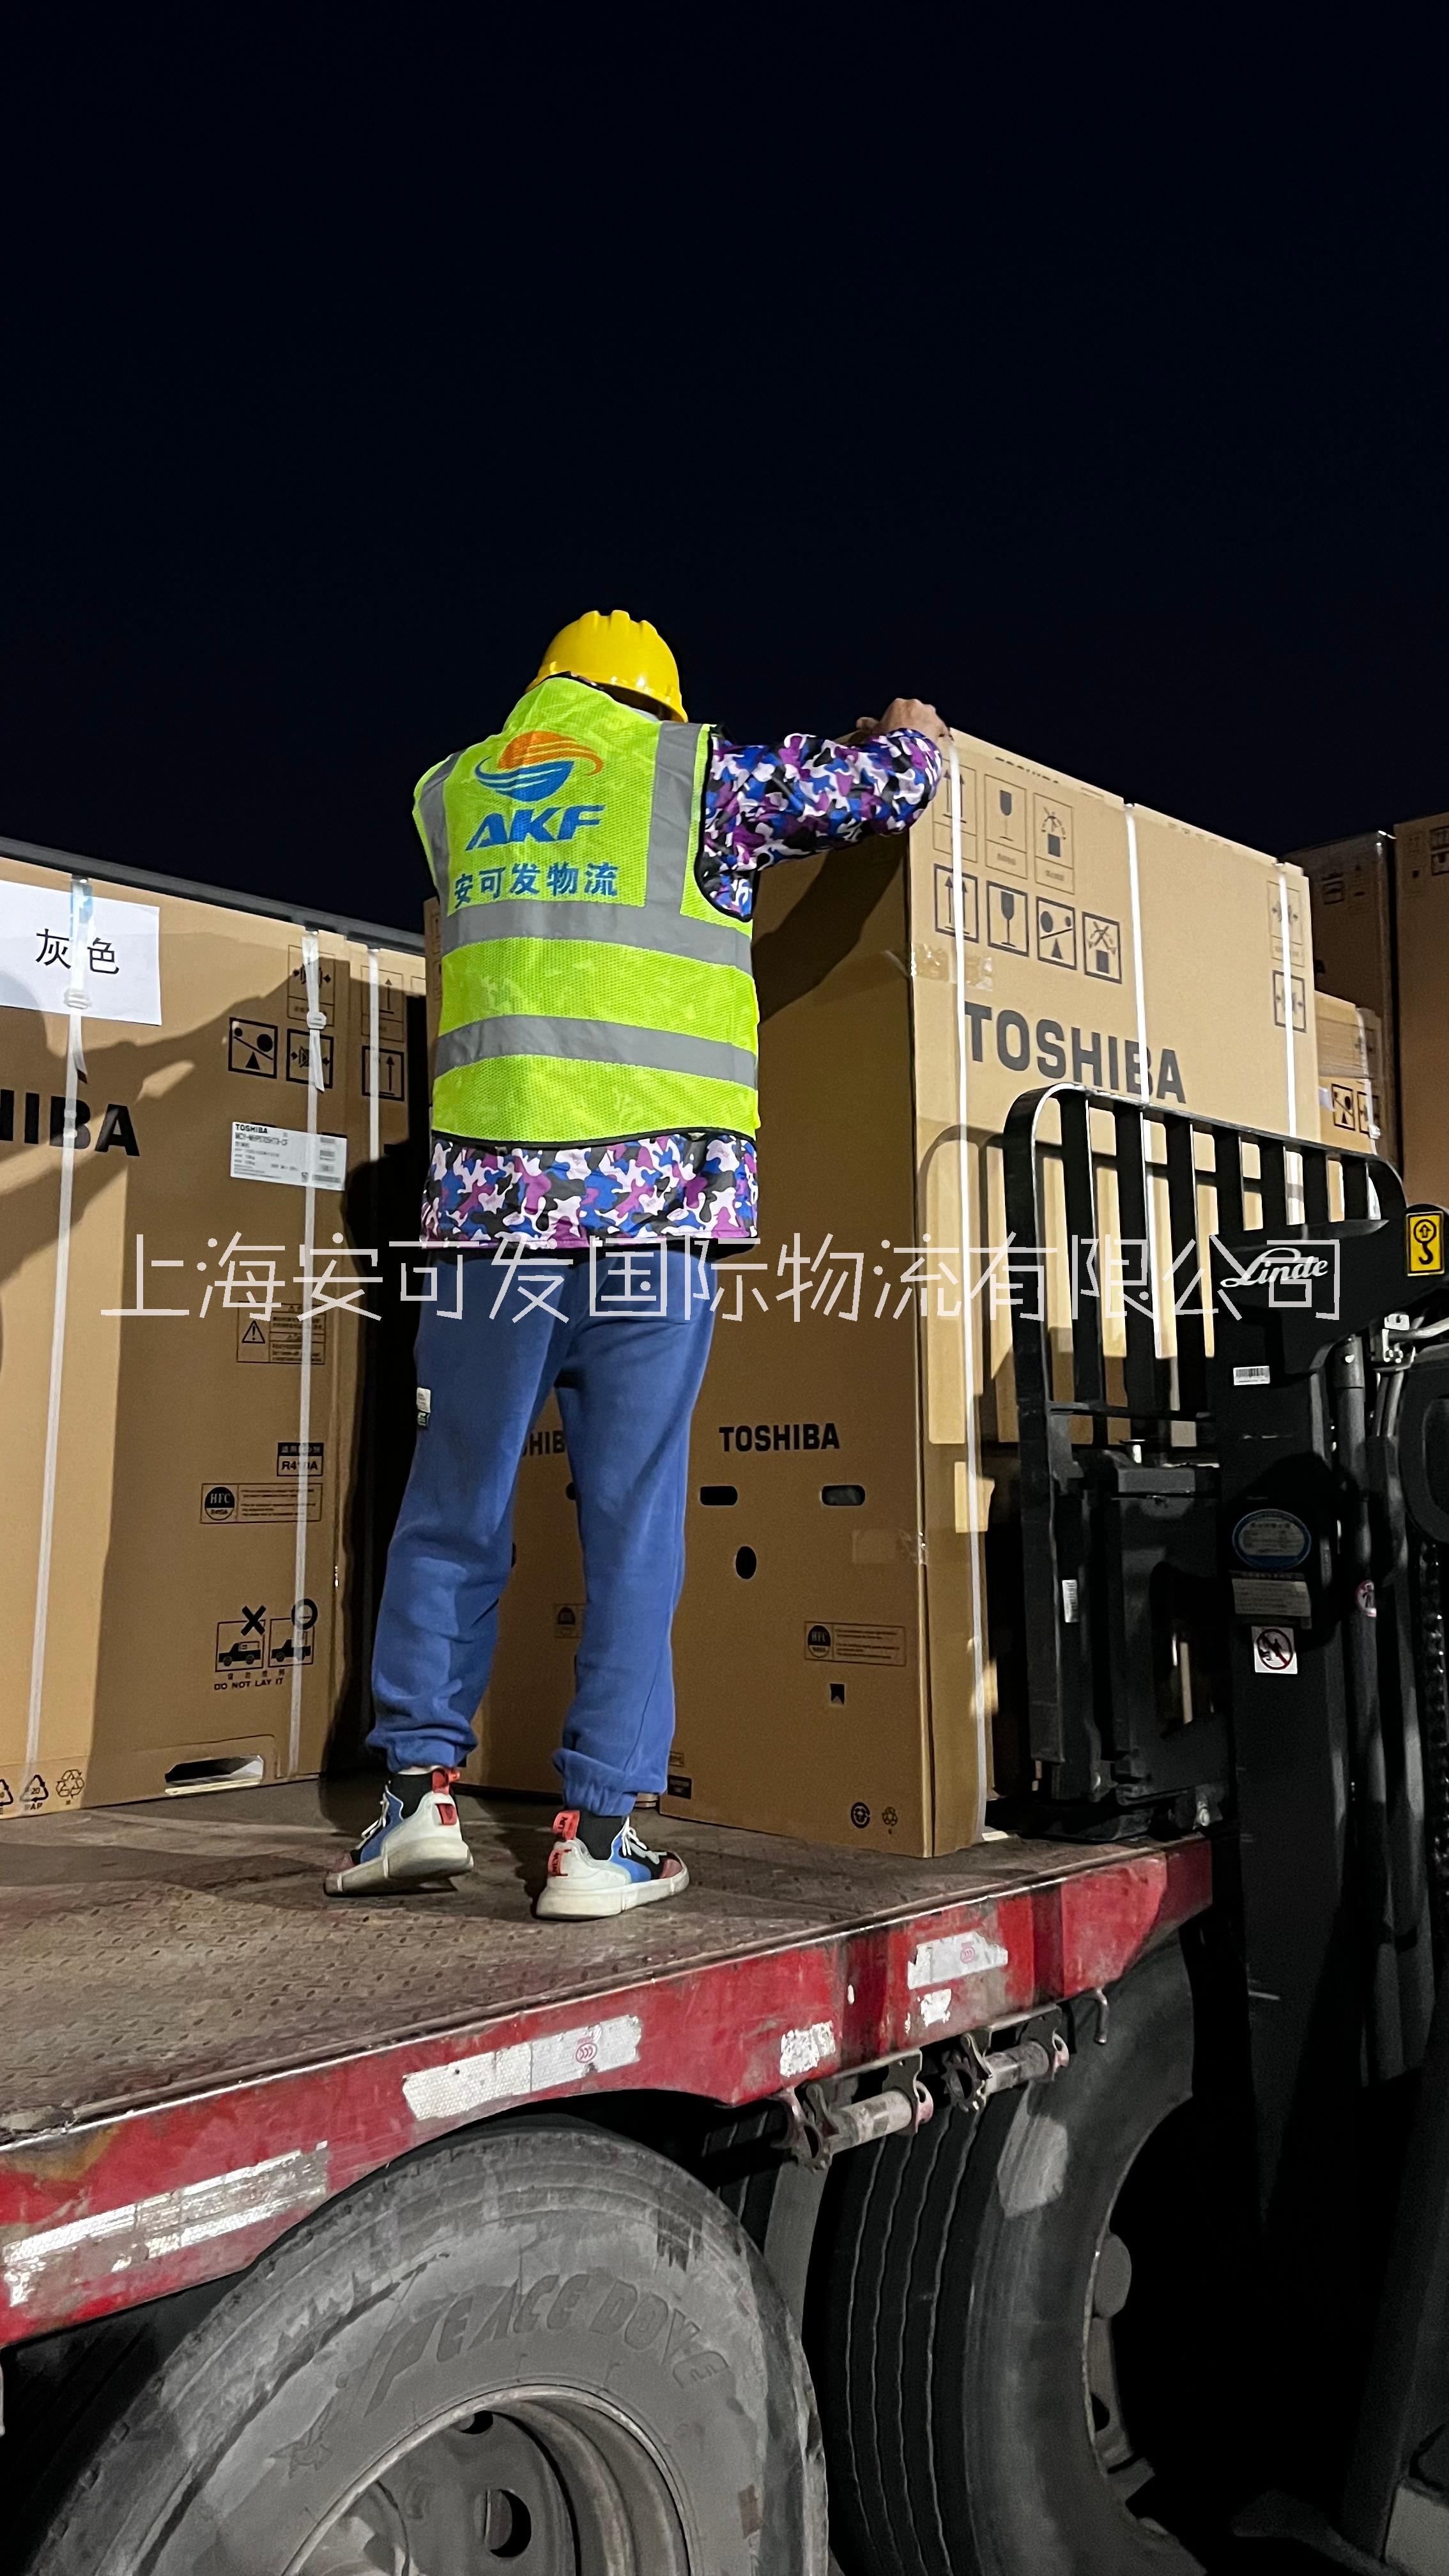 上海至济南整车运输 机械设备运输  上海至济南物流公司 仓储物流